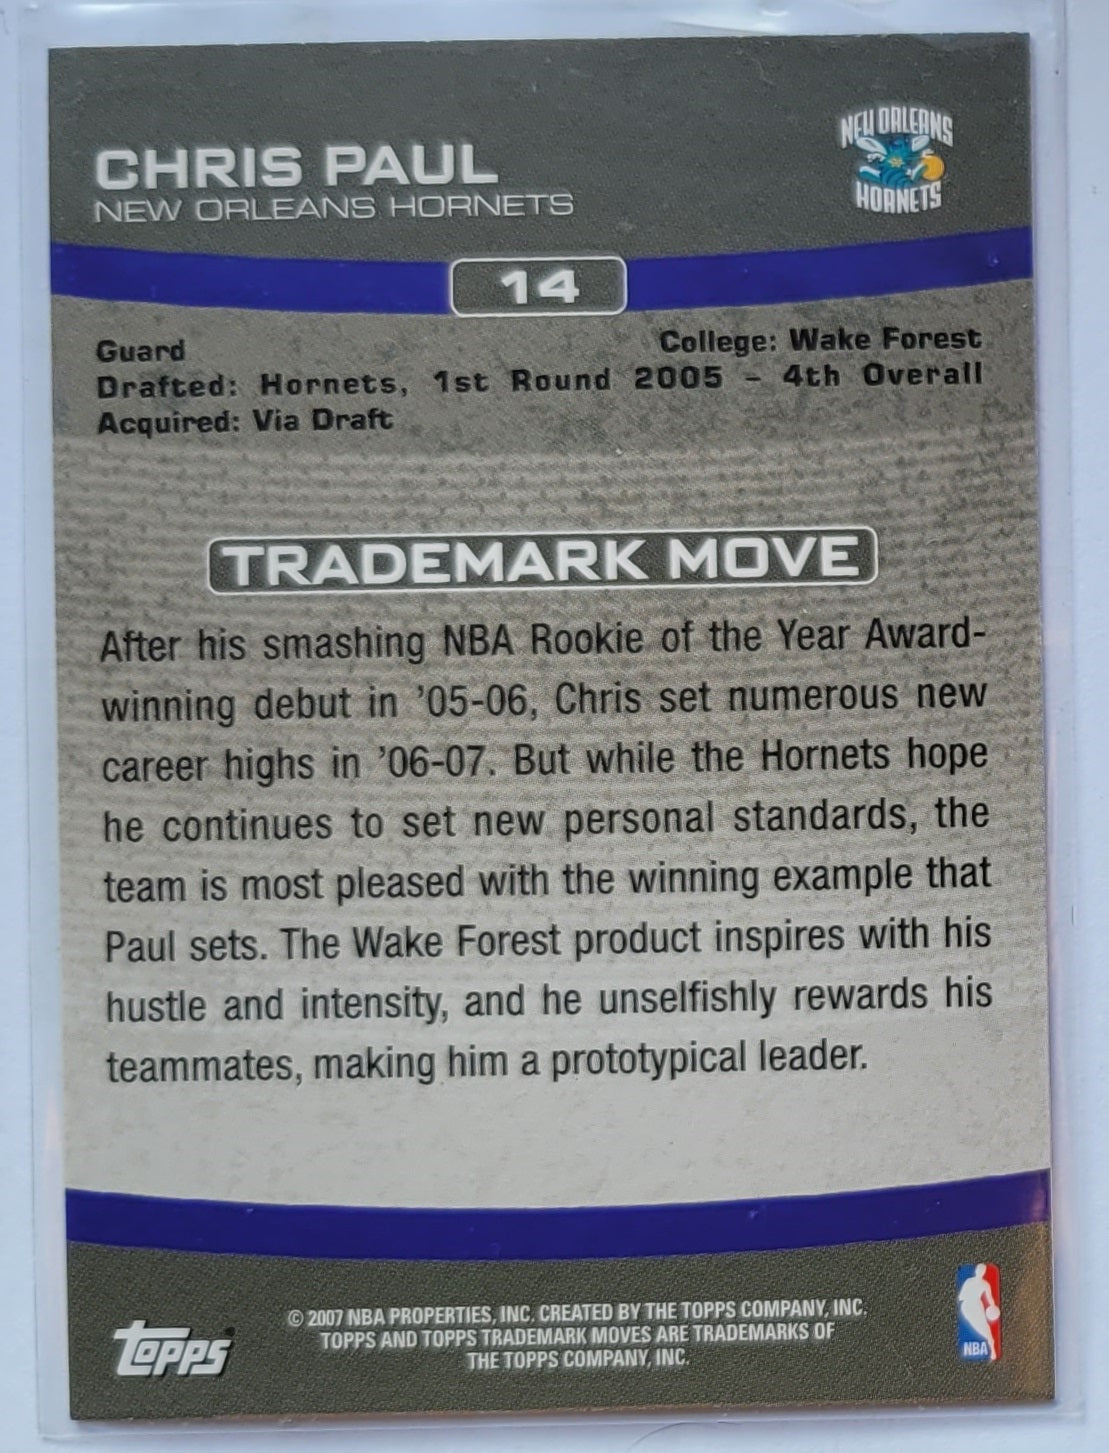 Chris Paul - 2007-08 Topps Trademark Moves #14